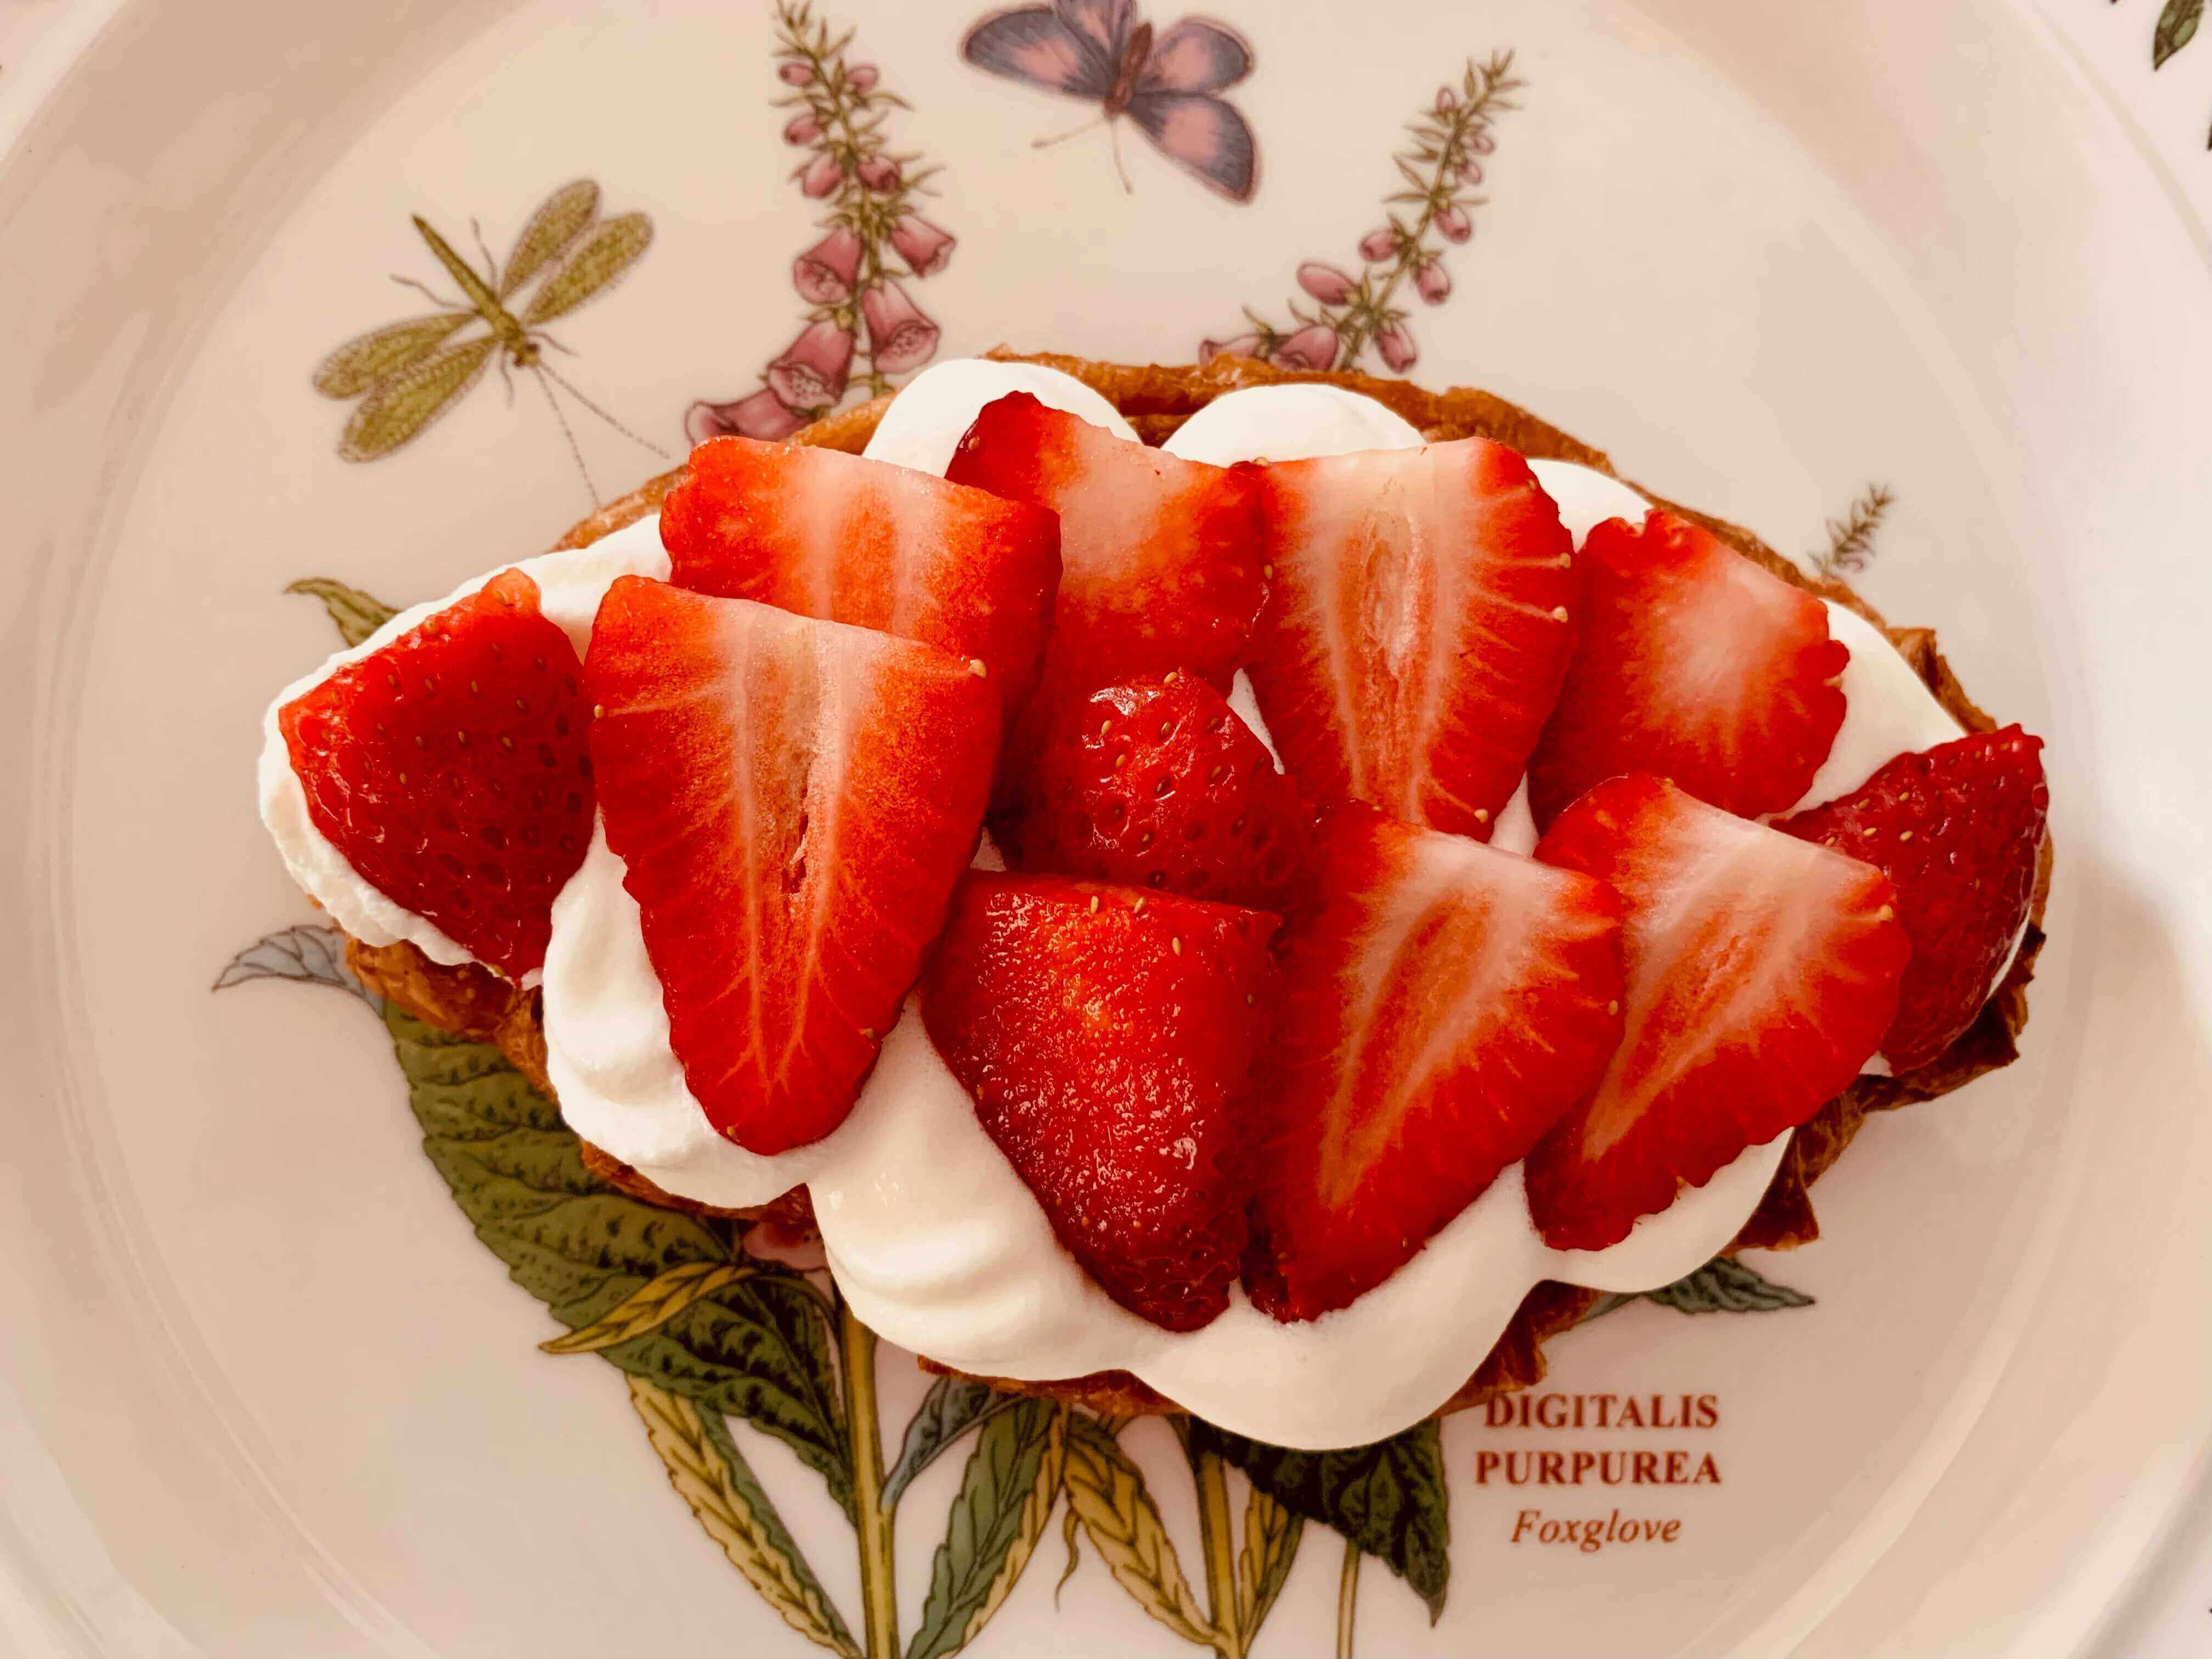 크로와상-위-생크림-얇게-썰린-딸기가-올려진-모습